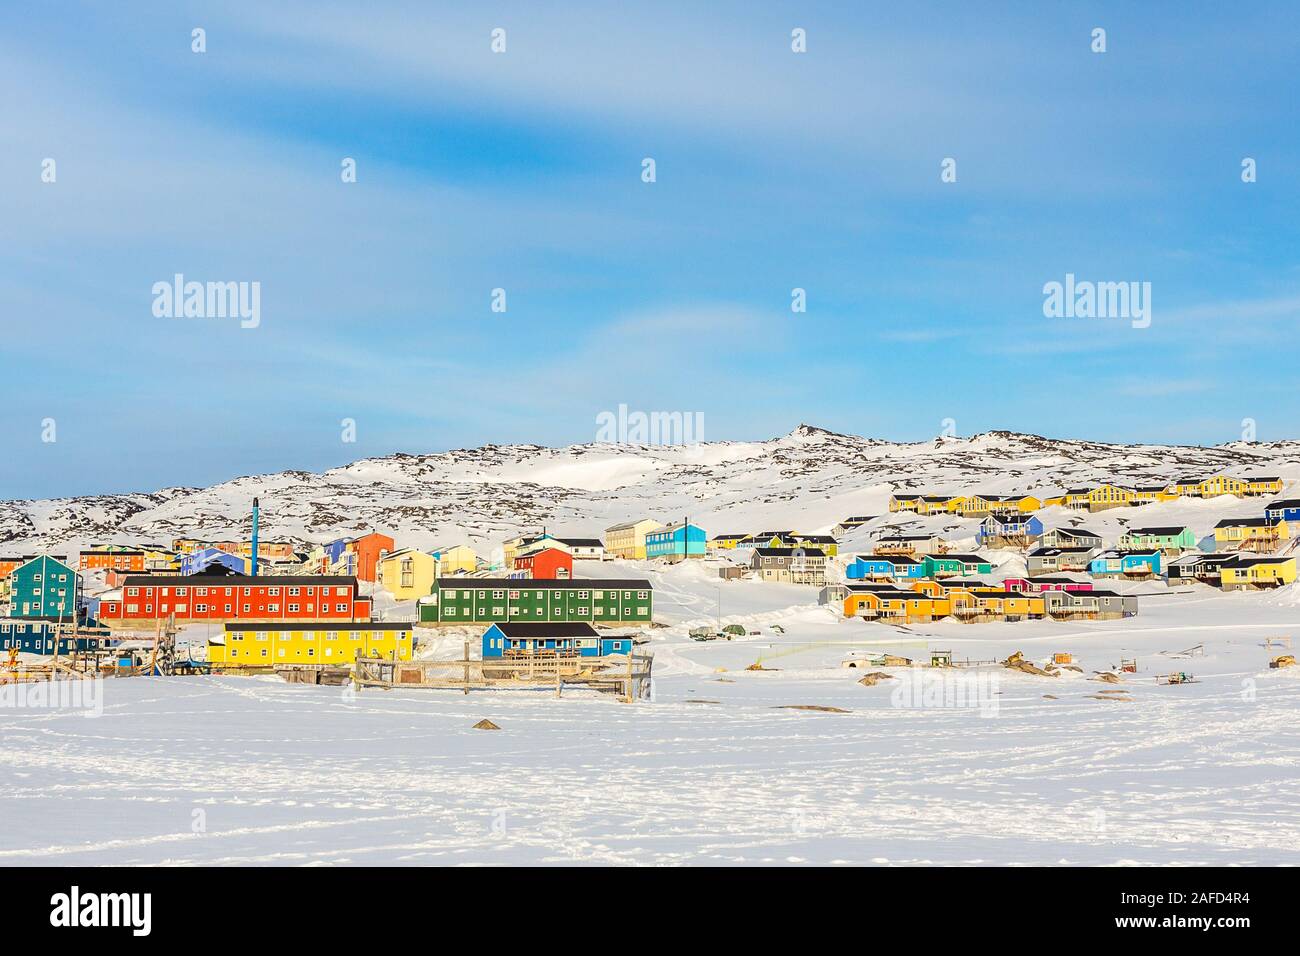 Arktis Stadtzentrum mit bunten Inuit Häuser auf den felsigen Hügel im Schnee, bedeckt, Avannaata Gemeinde Ilulissat, Grönland Stockfoto